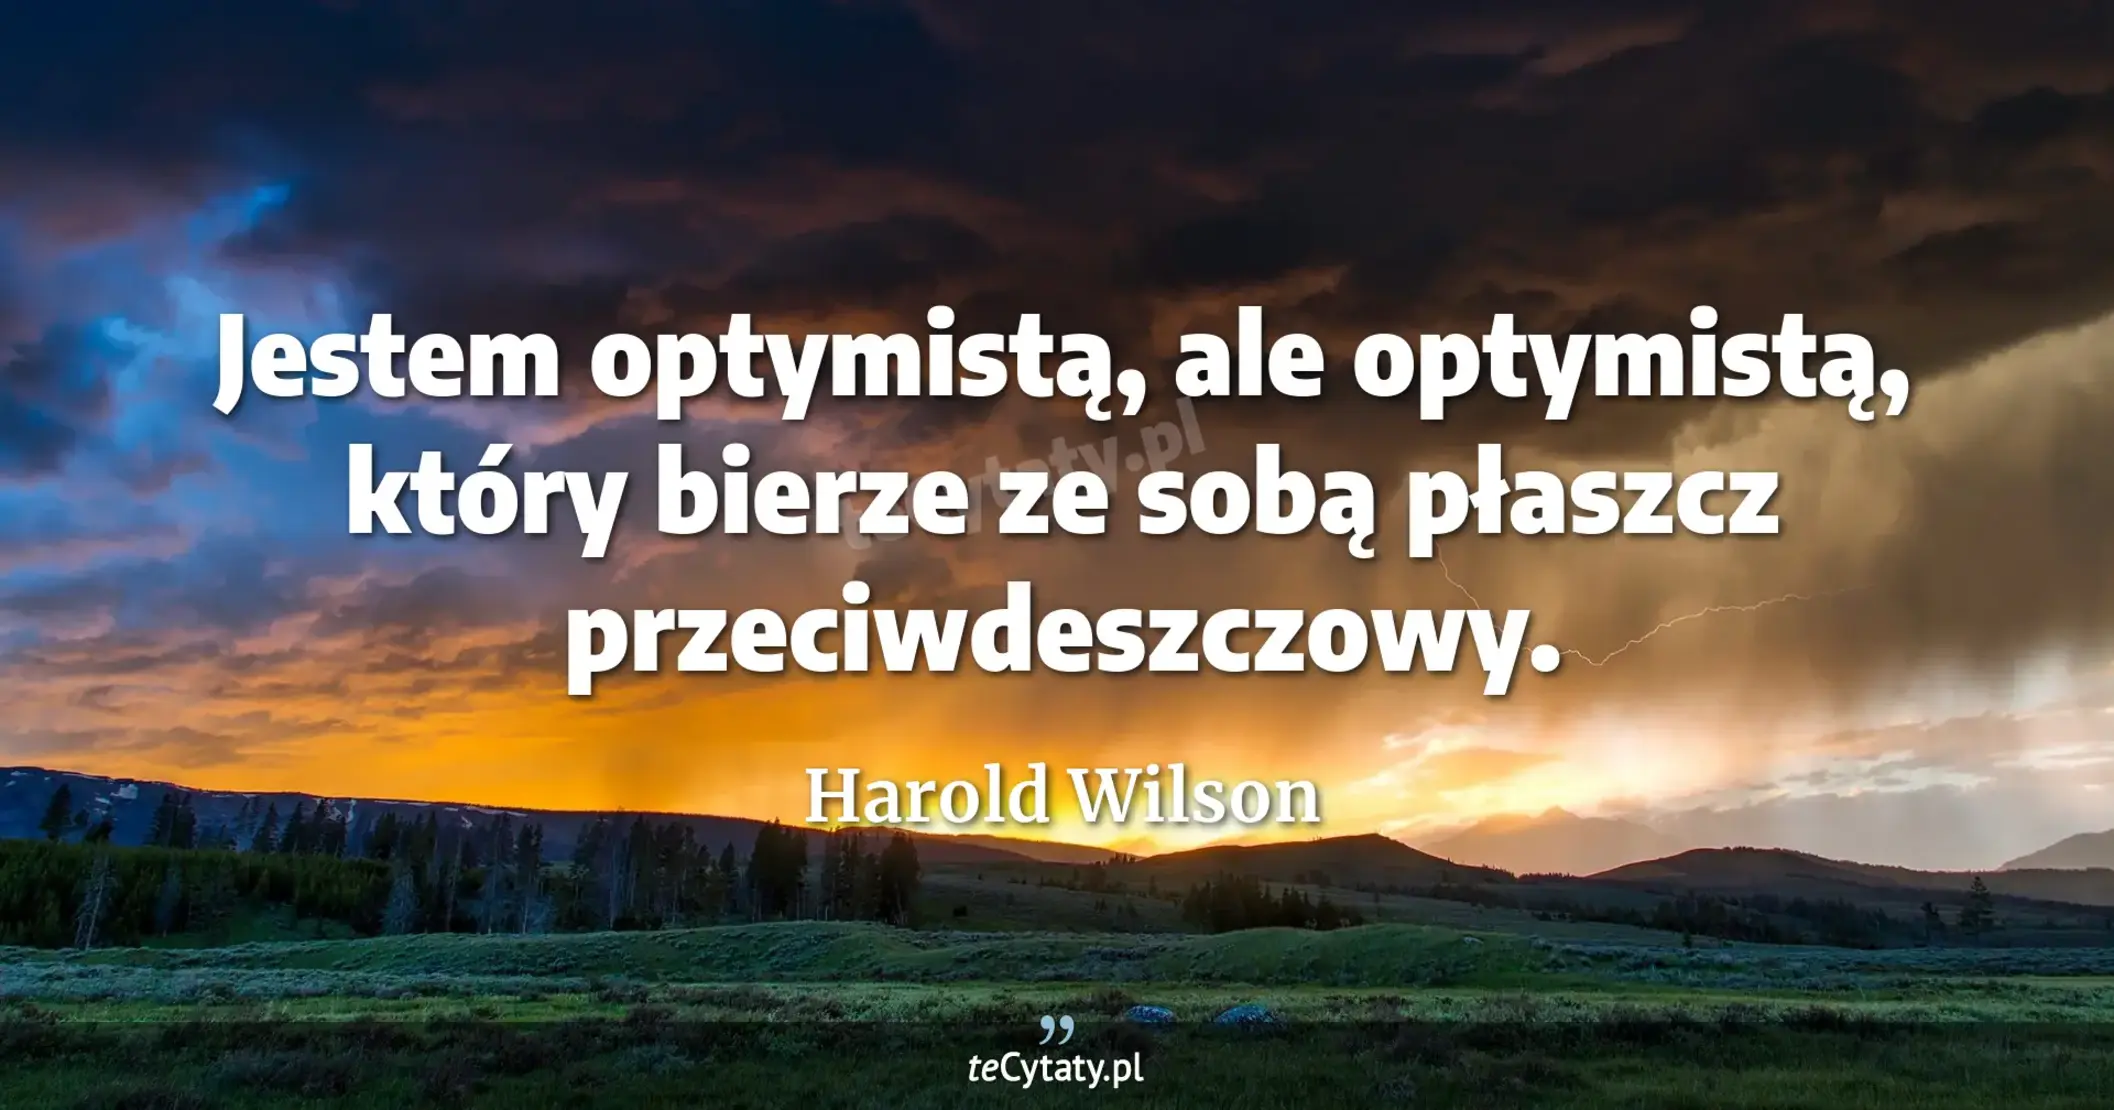 Jestem optymistą, ale optymistą, który bierze ze sobą płaszcz przeciwdeszczowy. - Harold Wilson